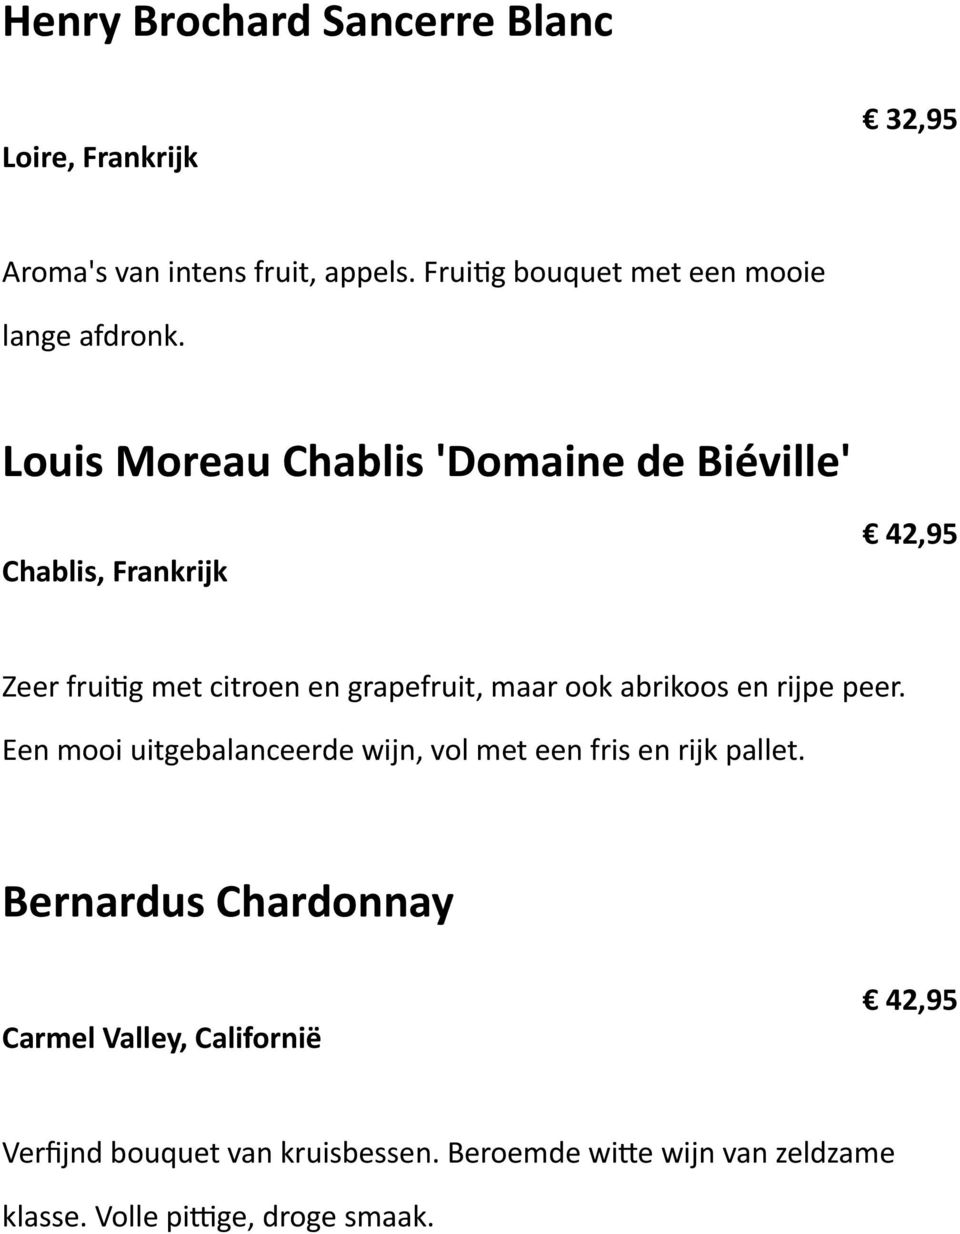 Louis Moreau Chablis 'Domaine de Biéville' Chablis, Frankrijk 42,95 Zeer frui+g met citroen en grapefruit, maar ook